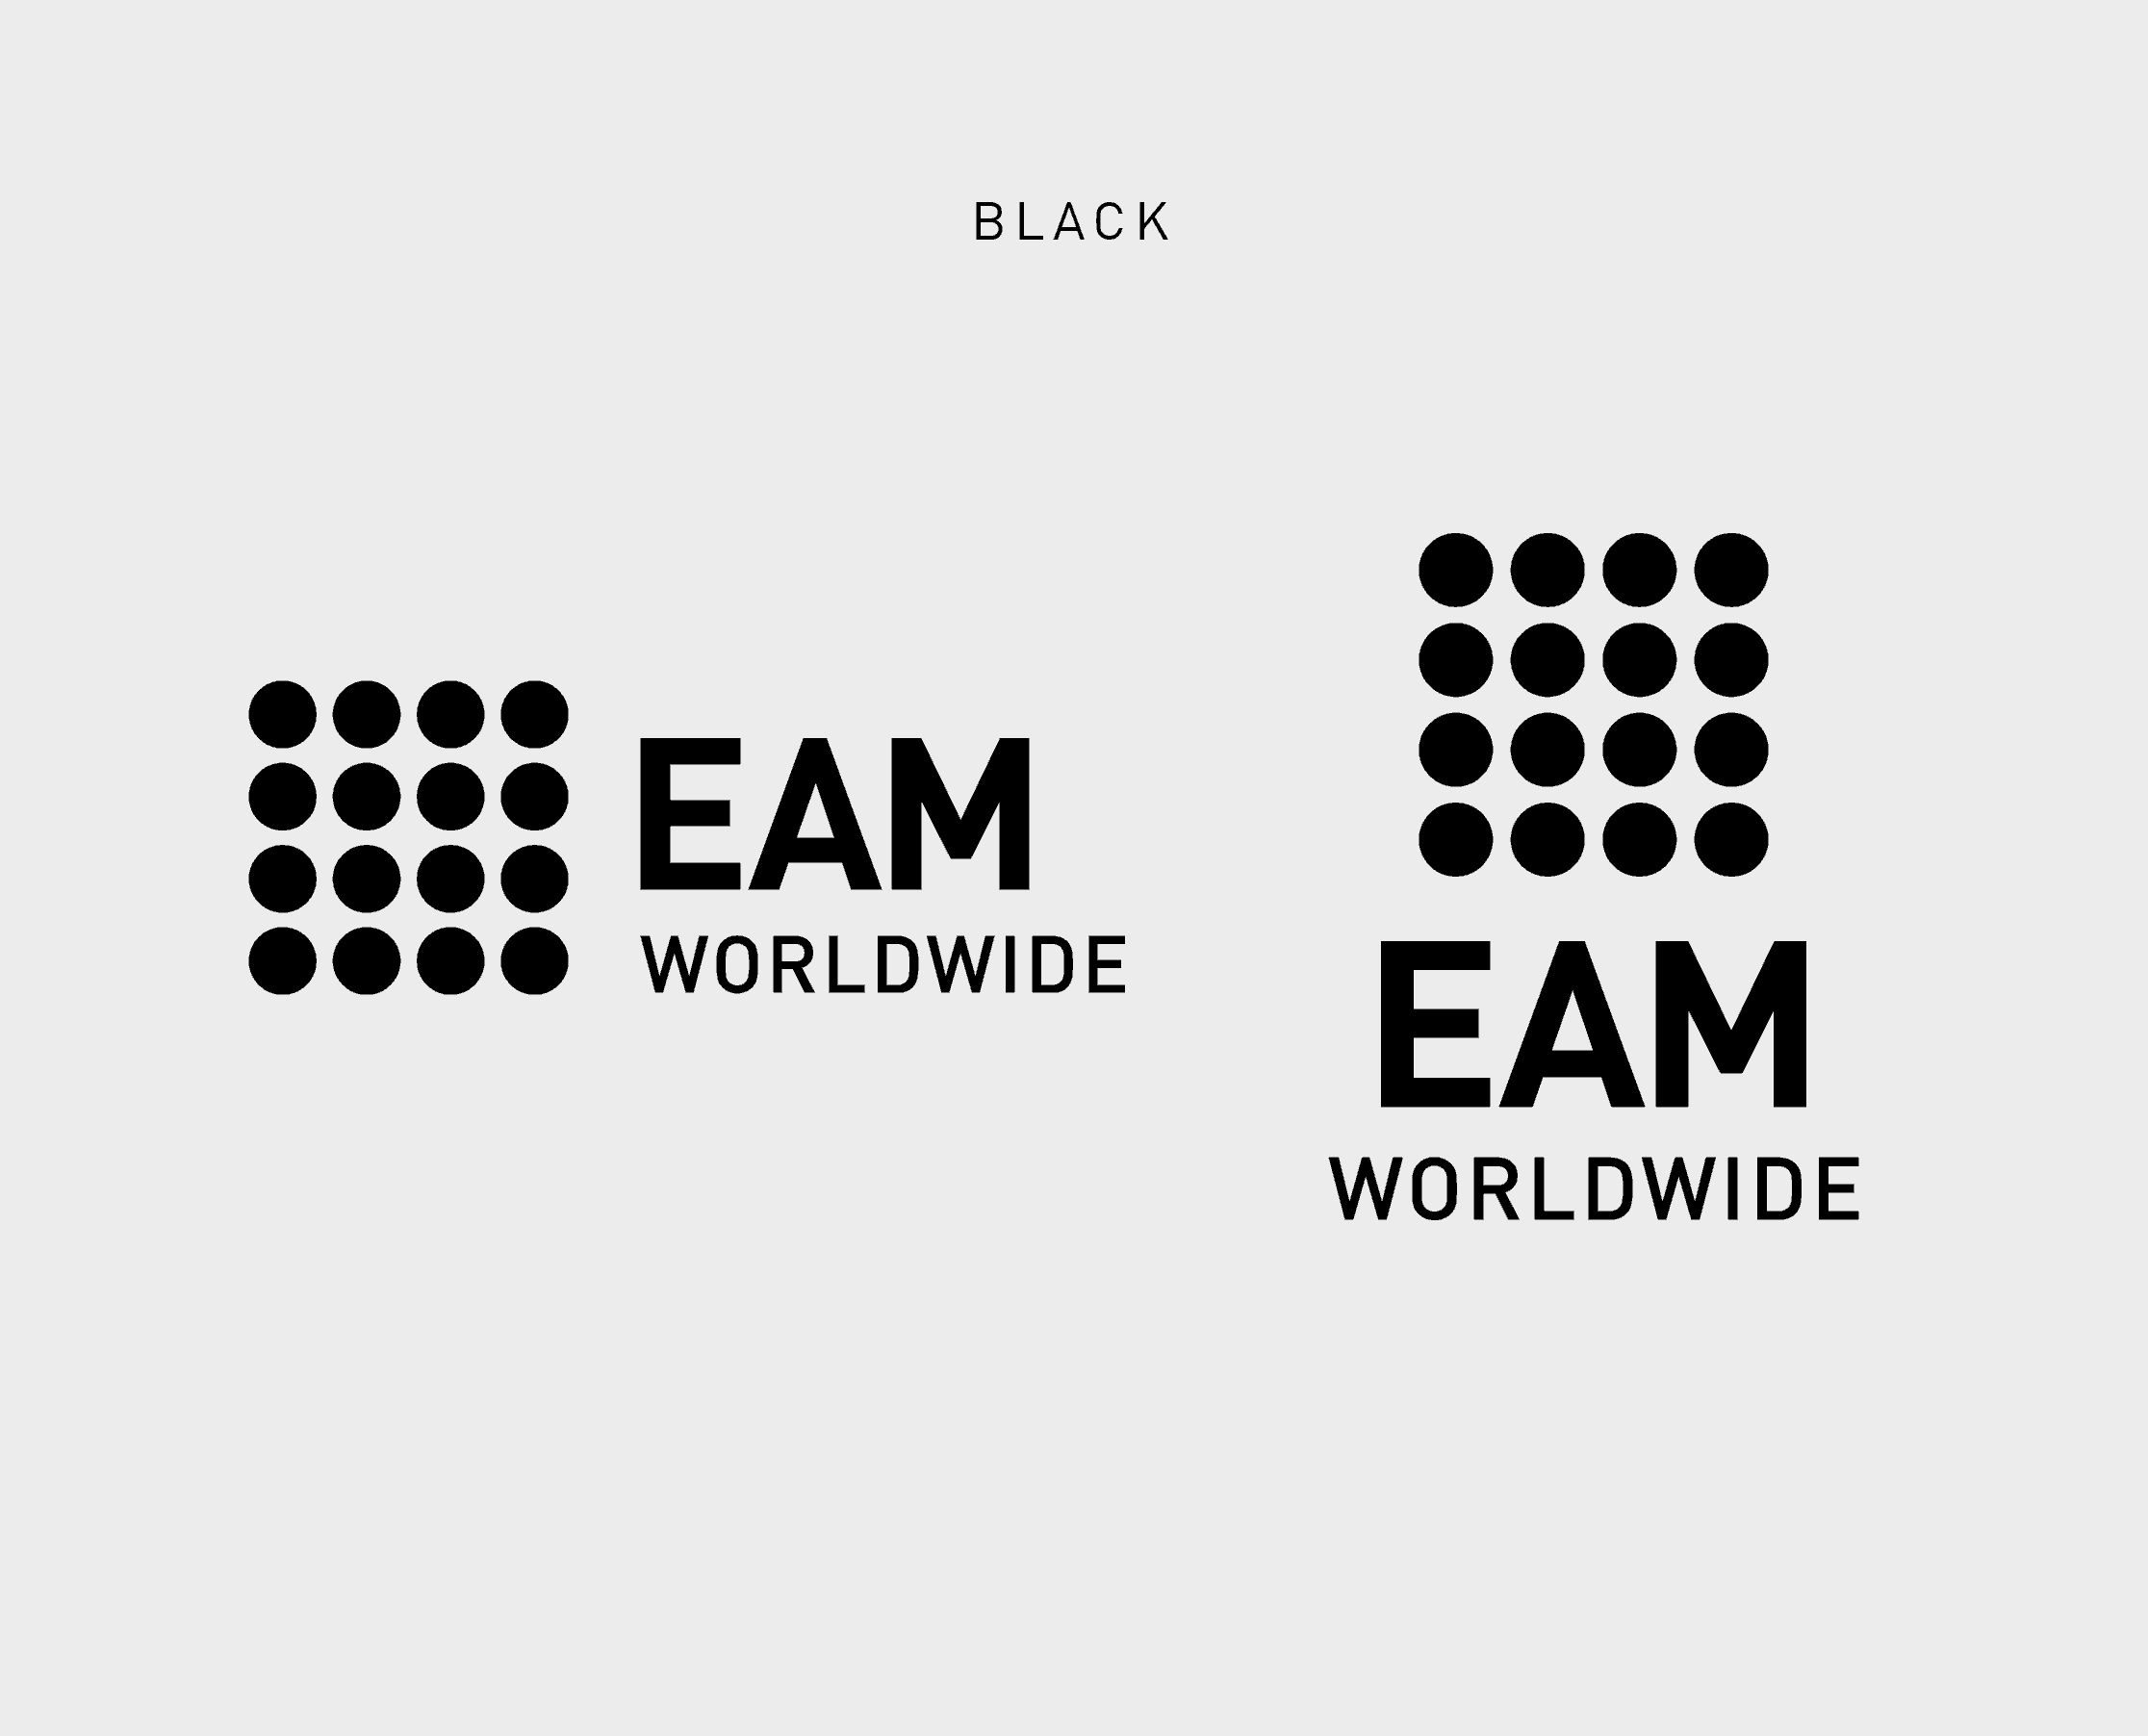 EAM Worldwide dark logo usage on light grey background